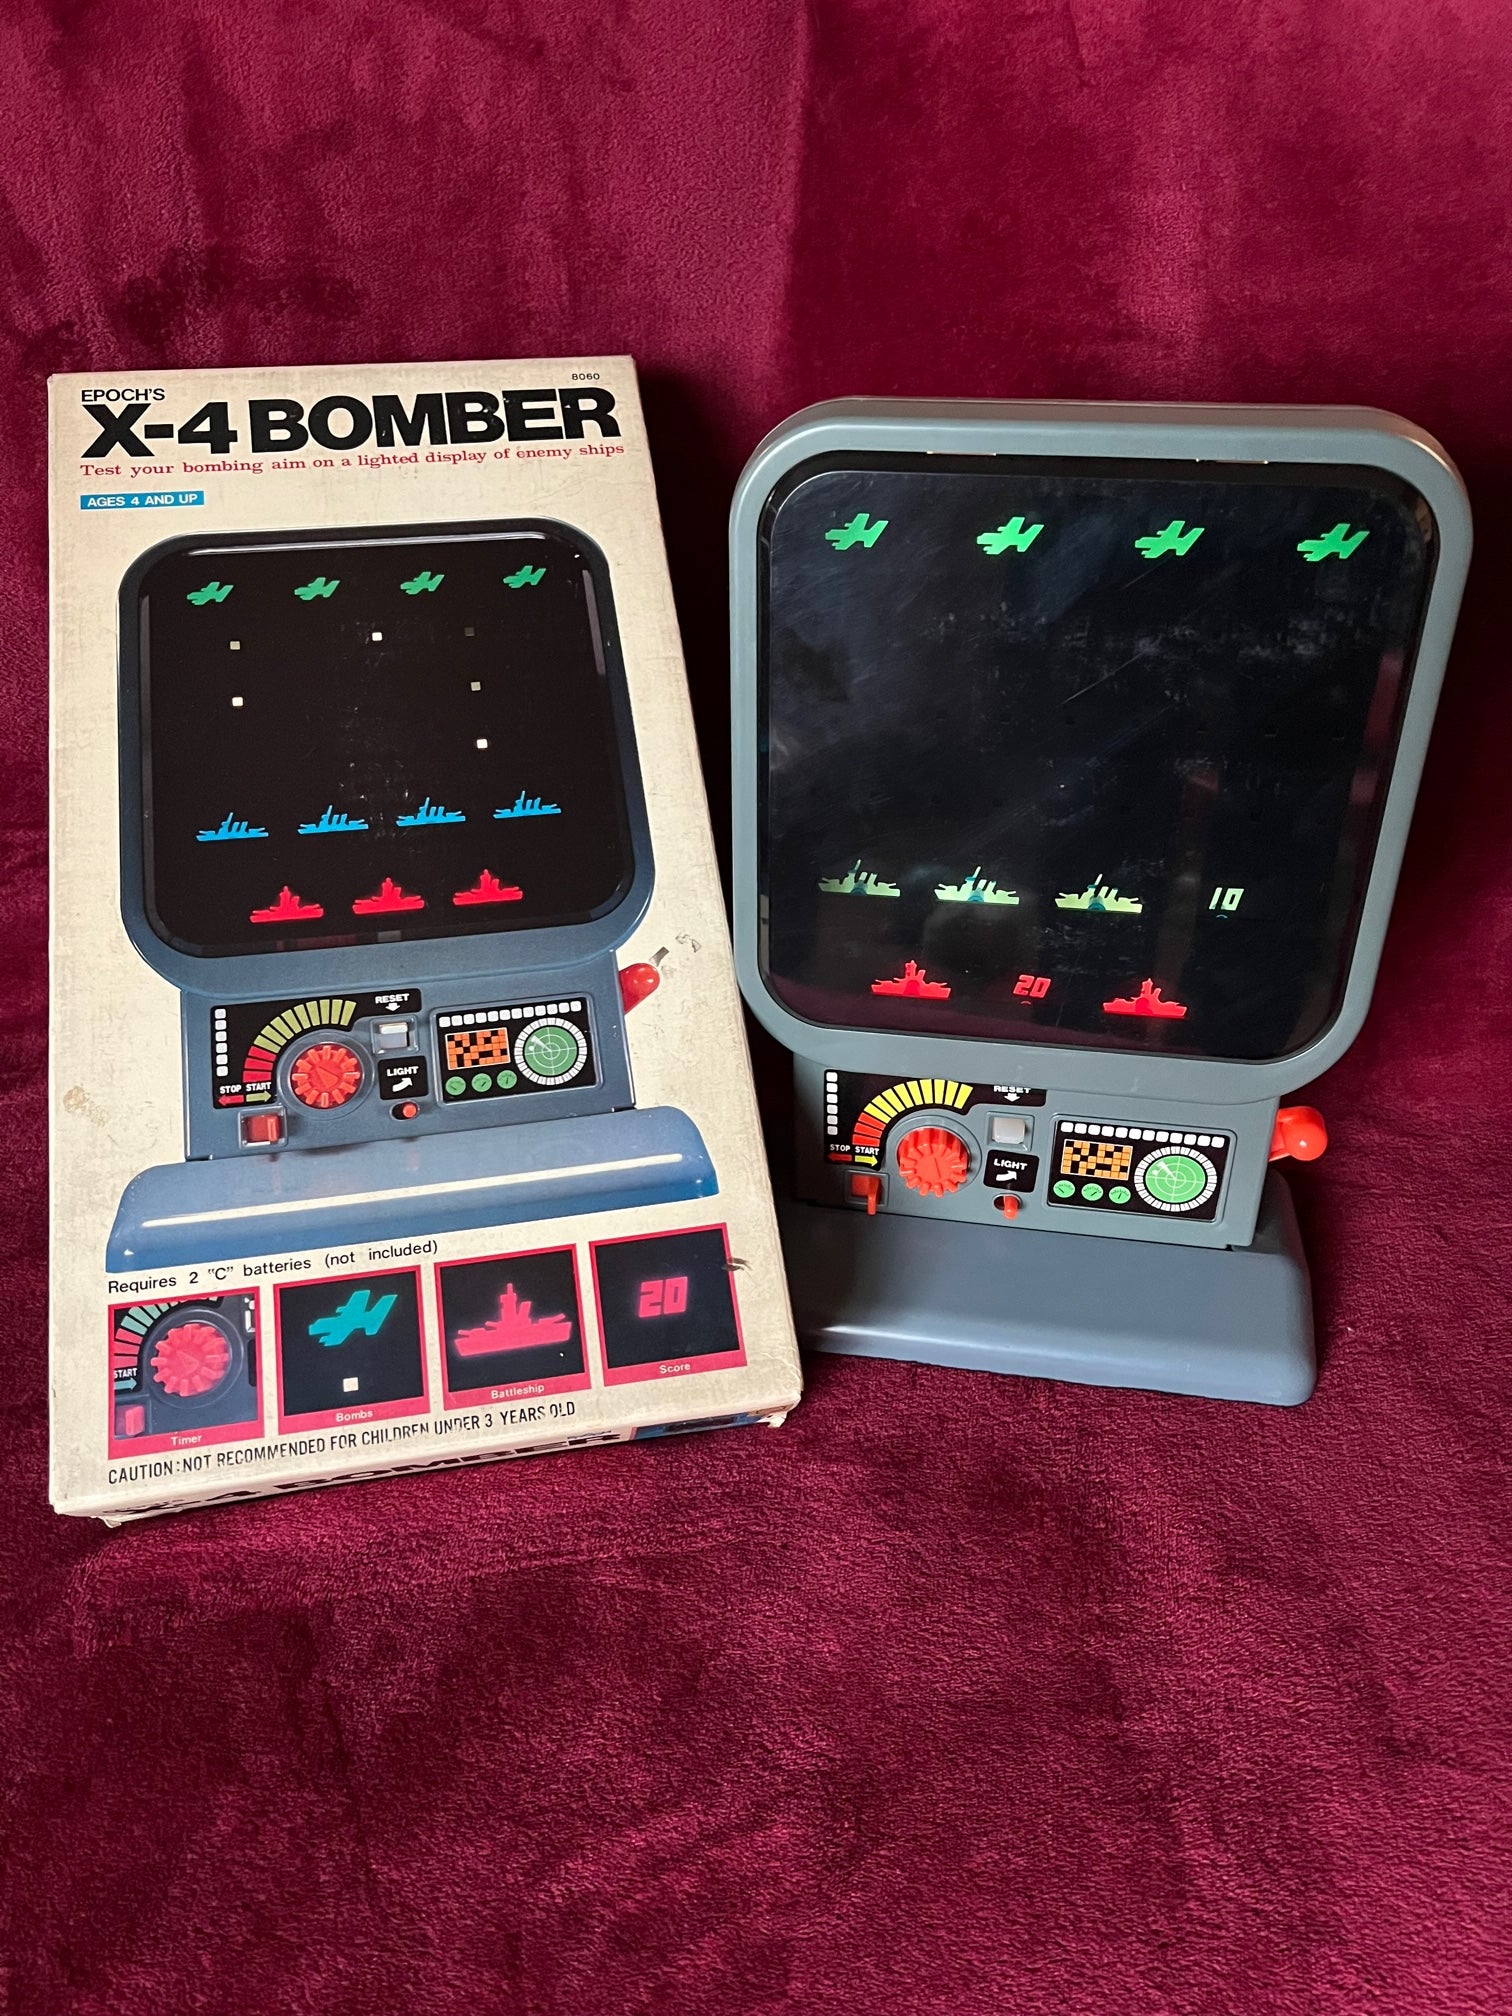 Epoch's X-4 Bomber gioco elettronico da tavolo funzionante 1979 made in Japan raro